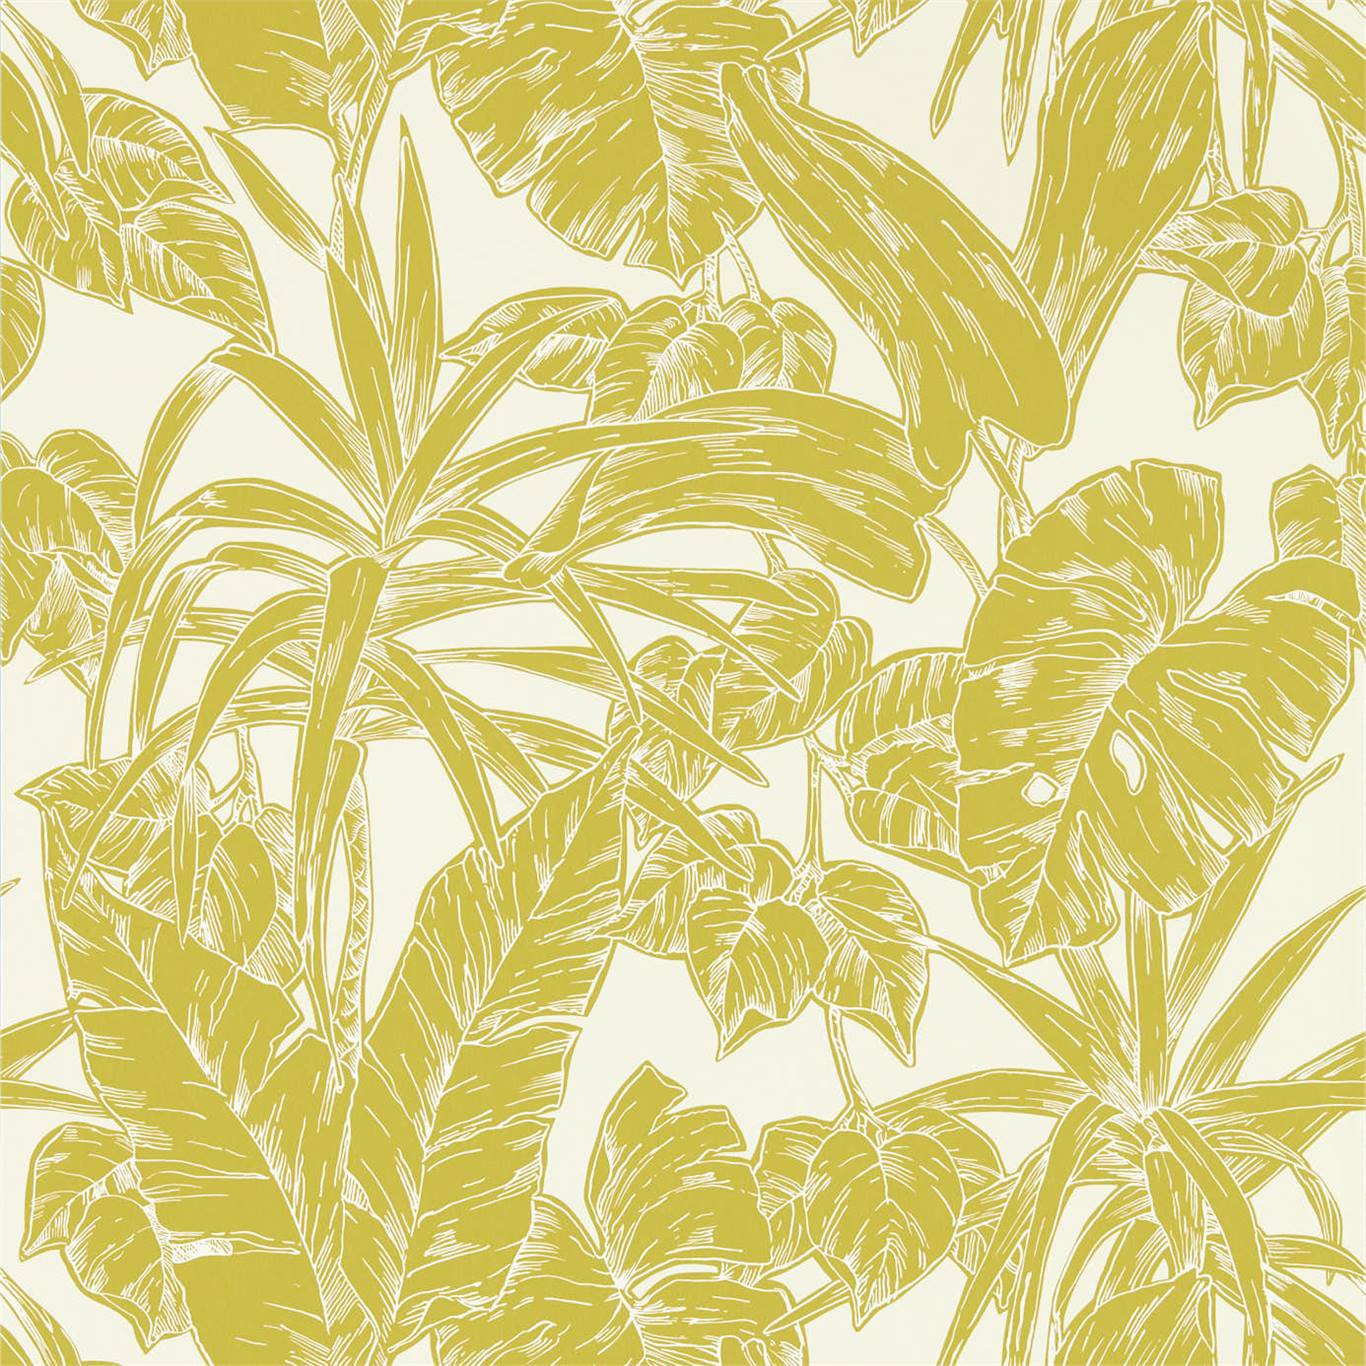 Parlour Palm Citrus Wallpaper NZAW112022 by Scion